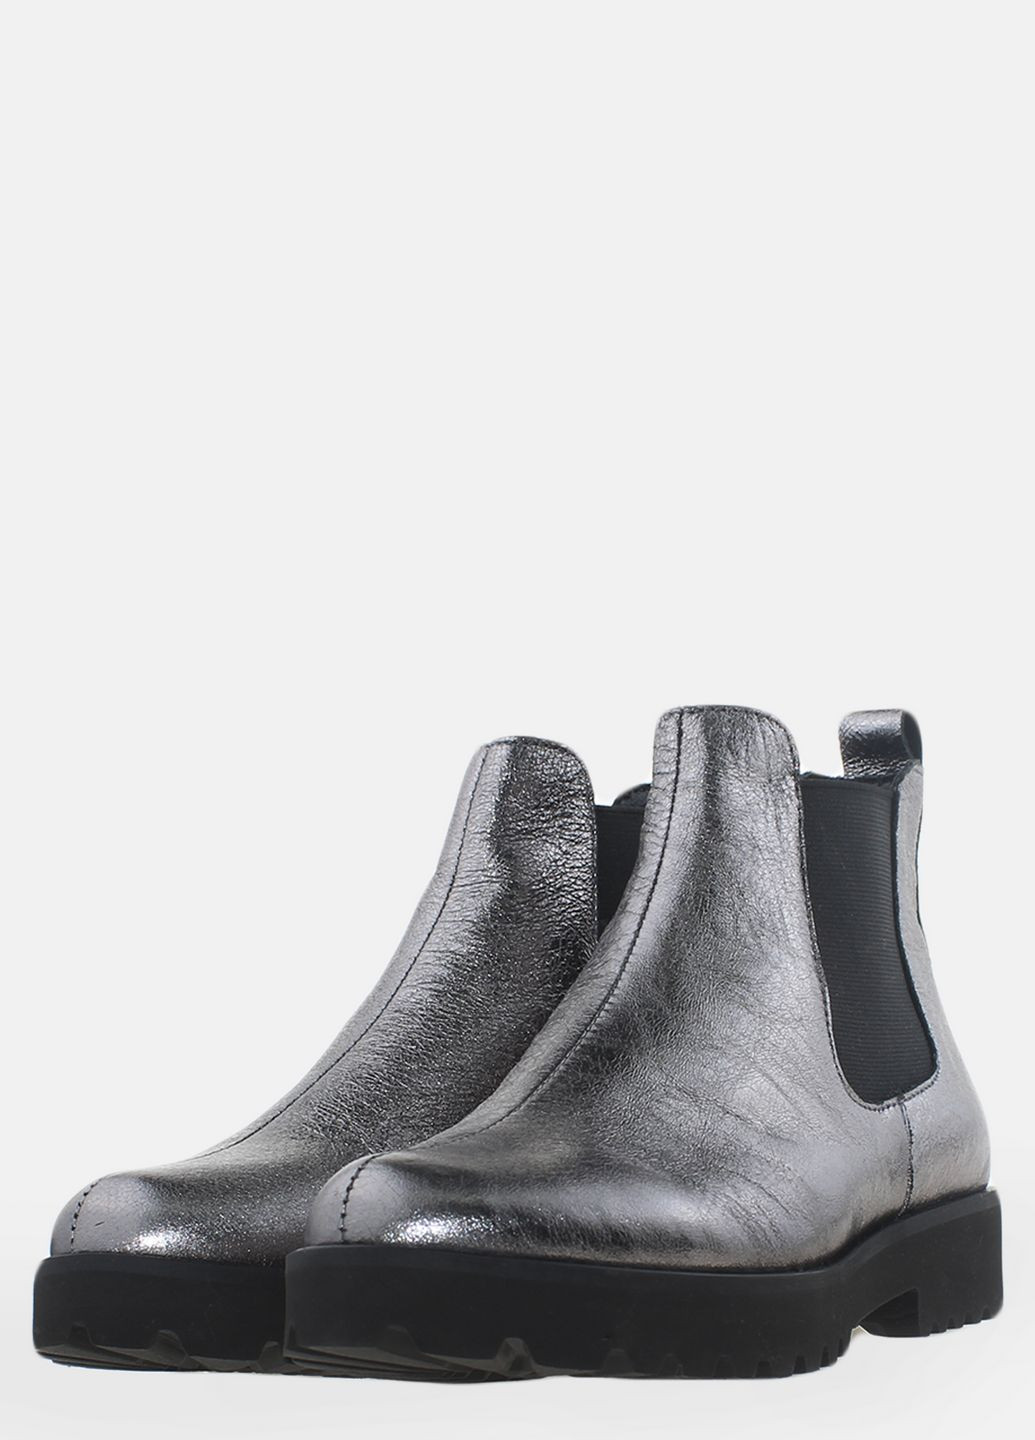 Осенние ботинки rt7-116 никель Top Shoes